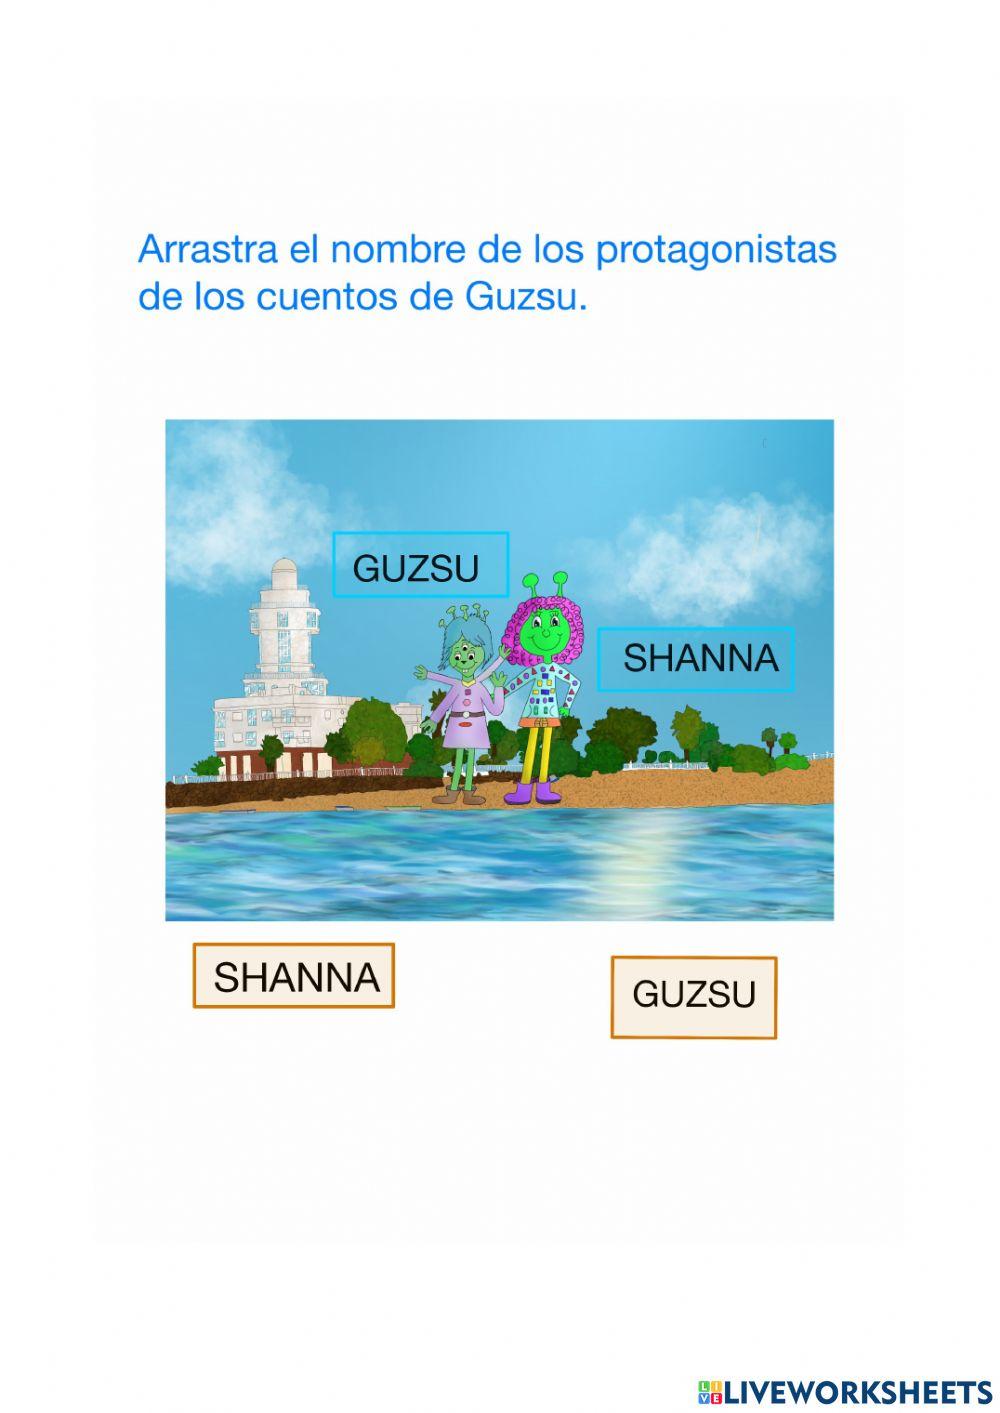 Busca el nombre de Guzsu y Shanna